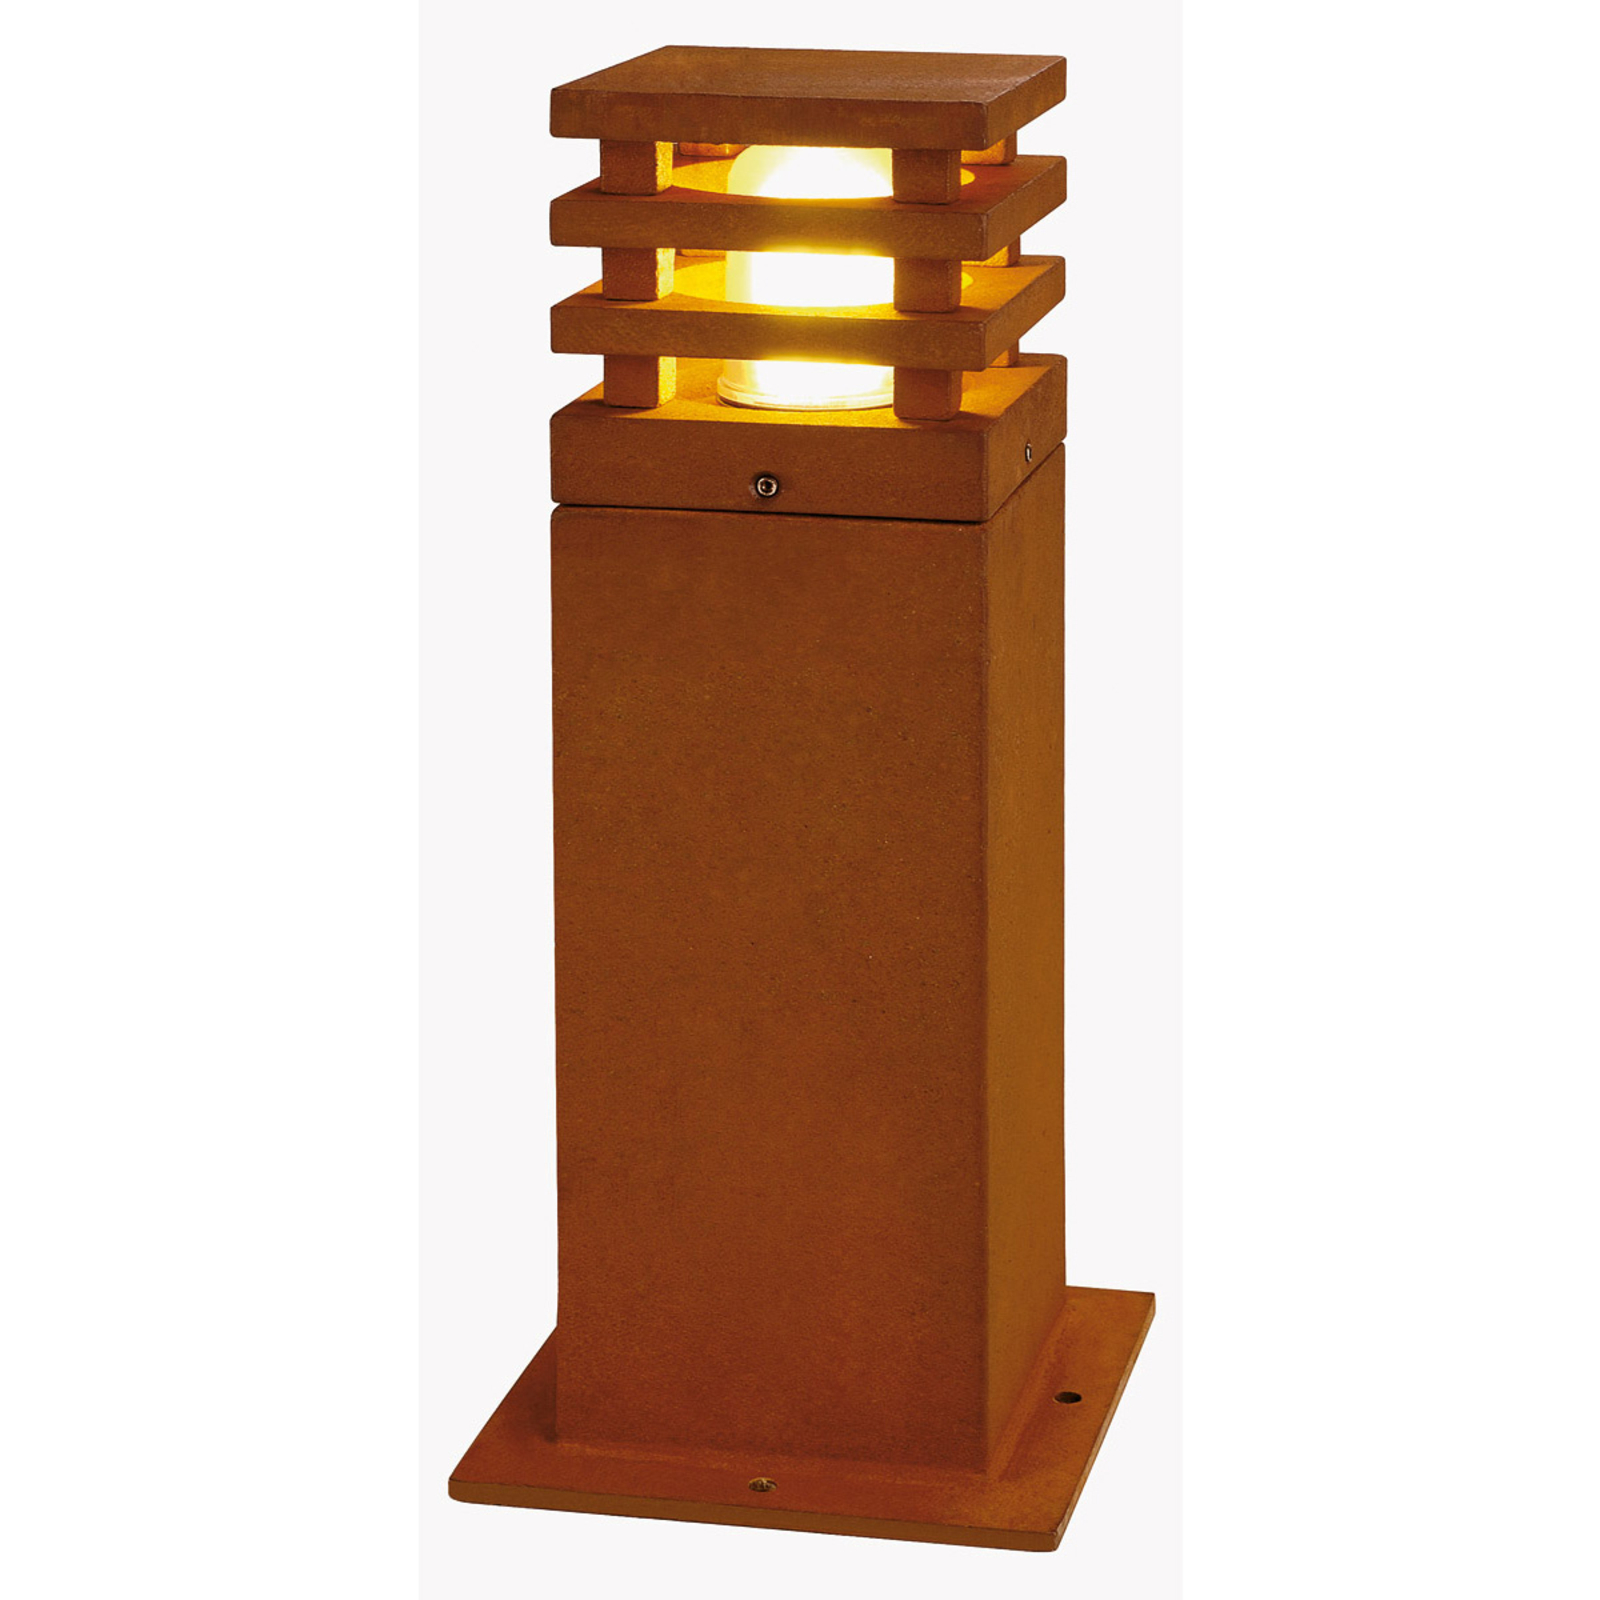 SLV Rusty kwadratowy słupek oświetleniowy LED jasny rdzawo-brązowy